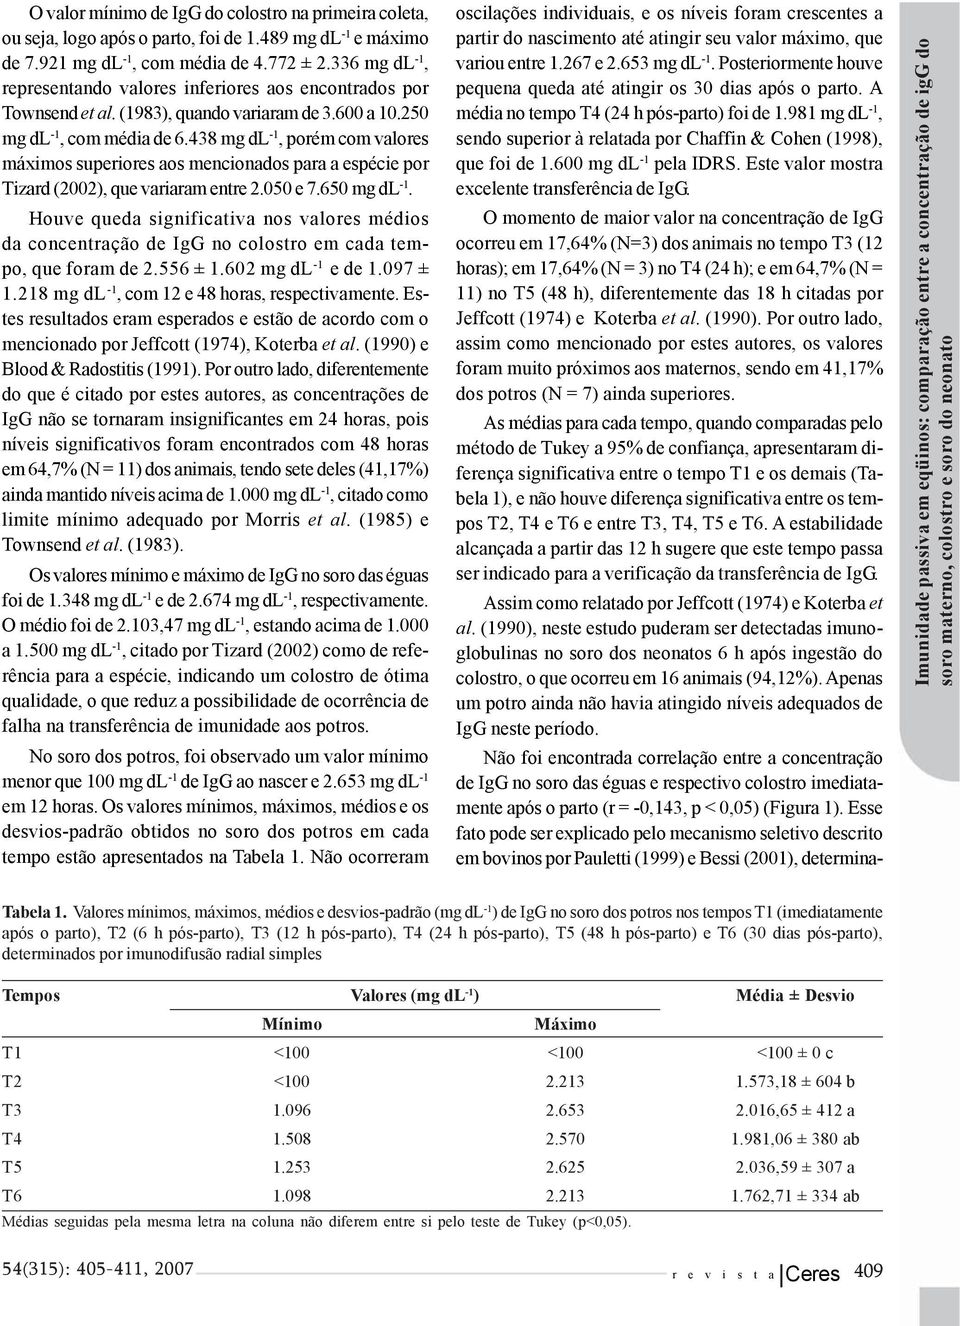 438 mg dl -1, porém com valores máximos superiores aos mencionados para a espécie por Tizard (2002), que variaram entre 2.050 e 7.650 mg dl -1.